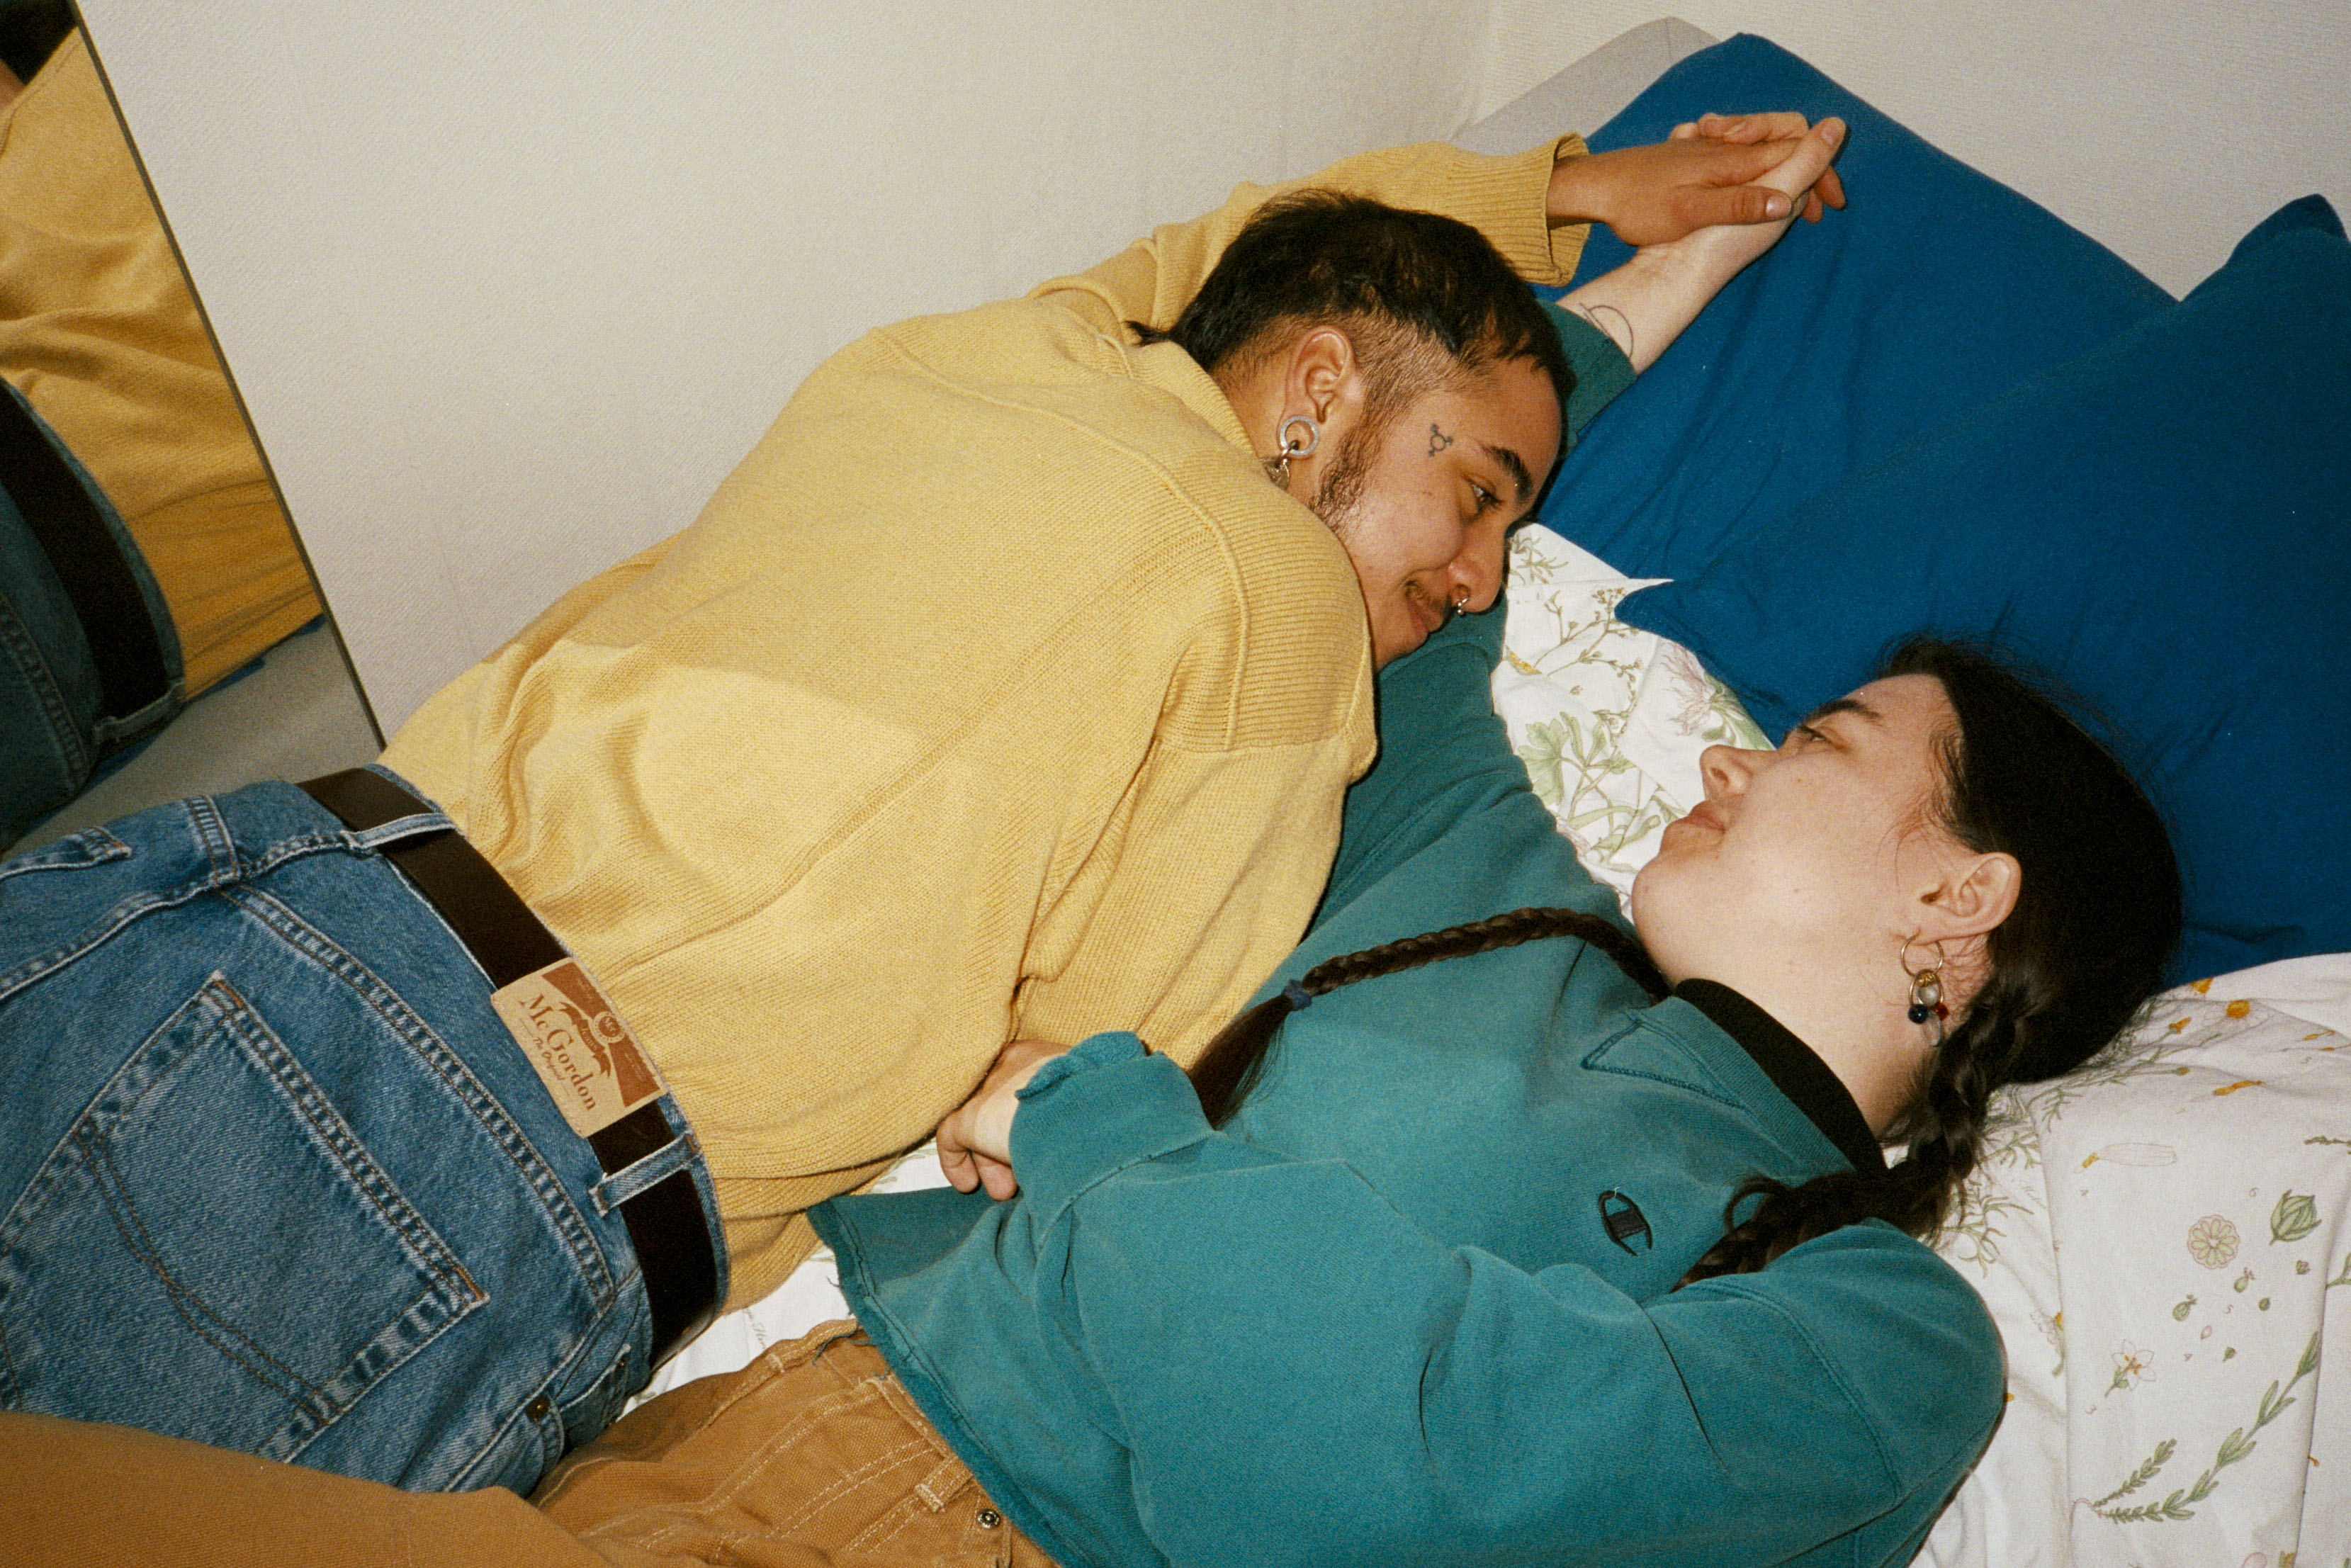 Två personer ligger i en säng och tittar kärleksfullt på varandra.